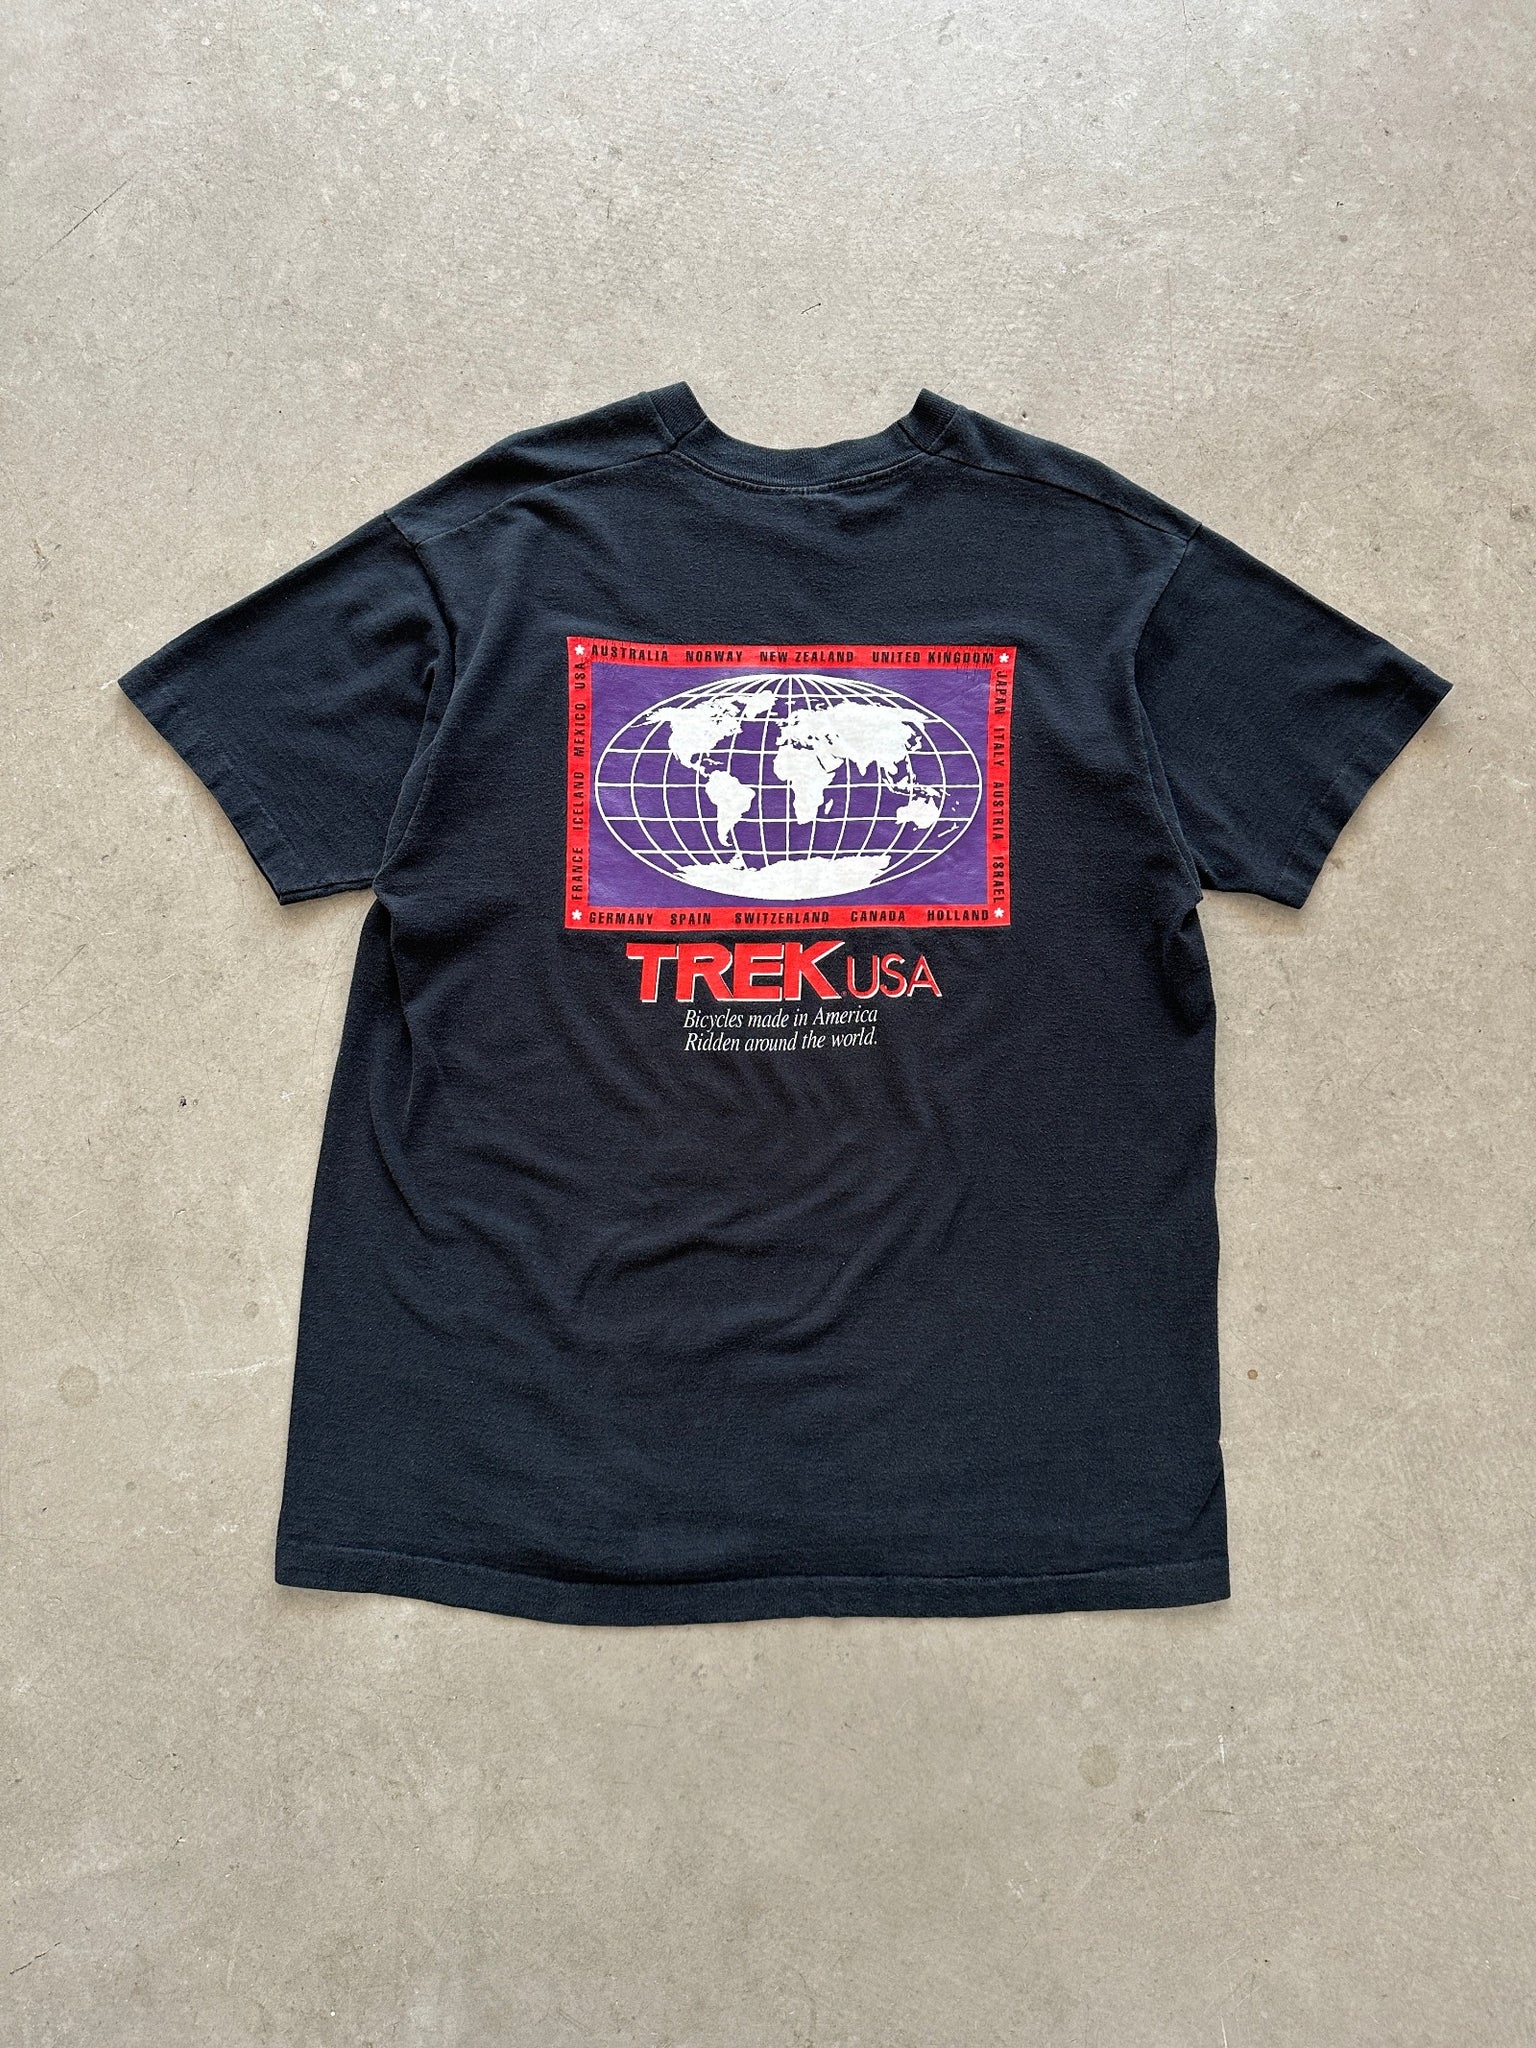 1990’s Trek USA T-Shirt - XL